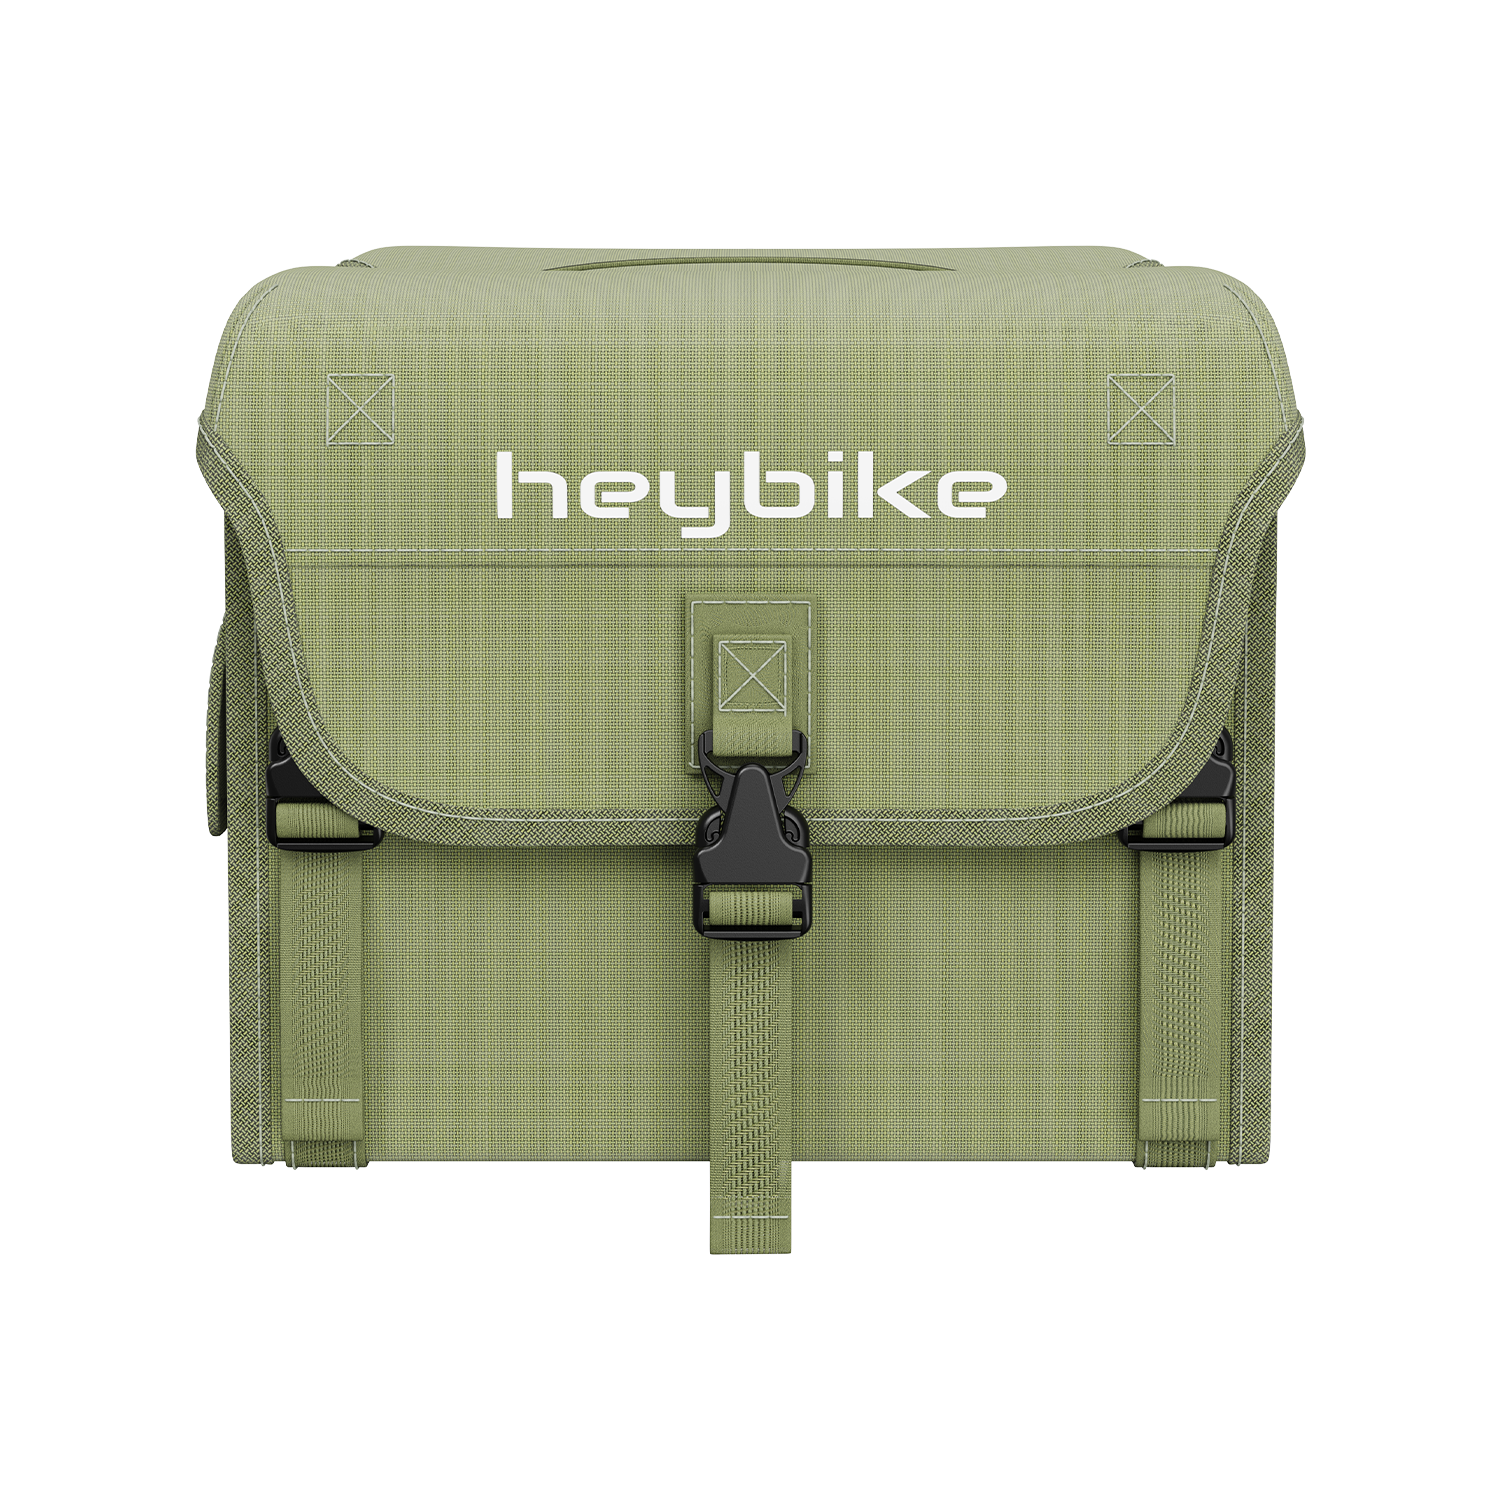 Bicycle rack pannier bag